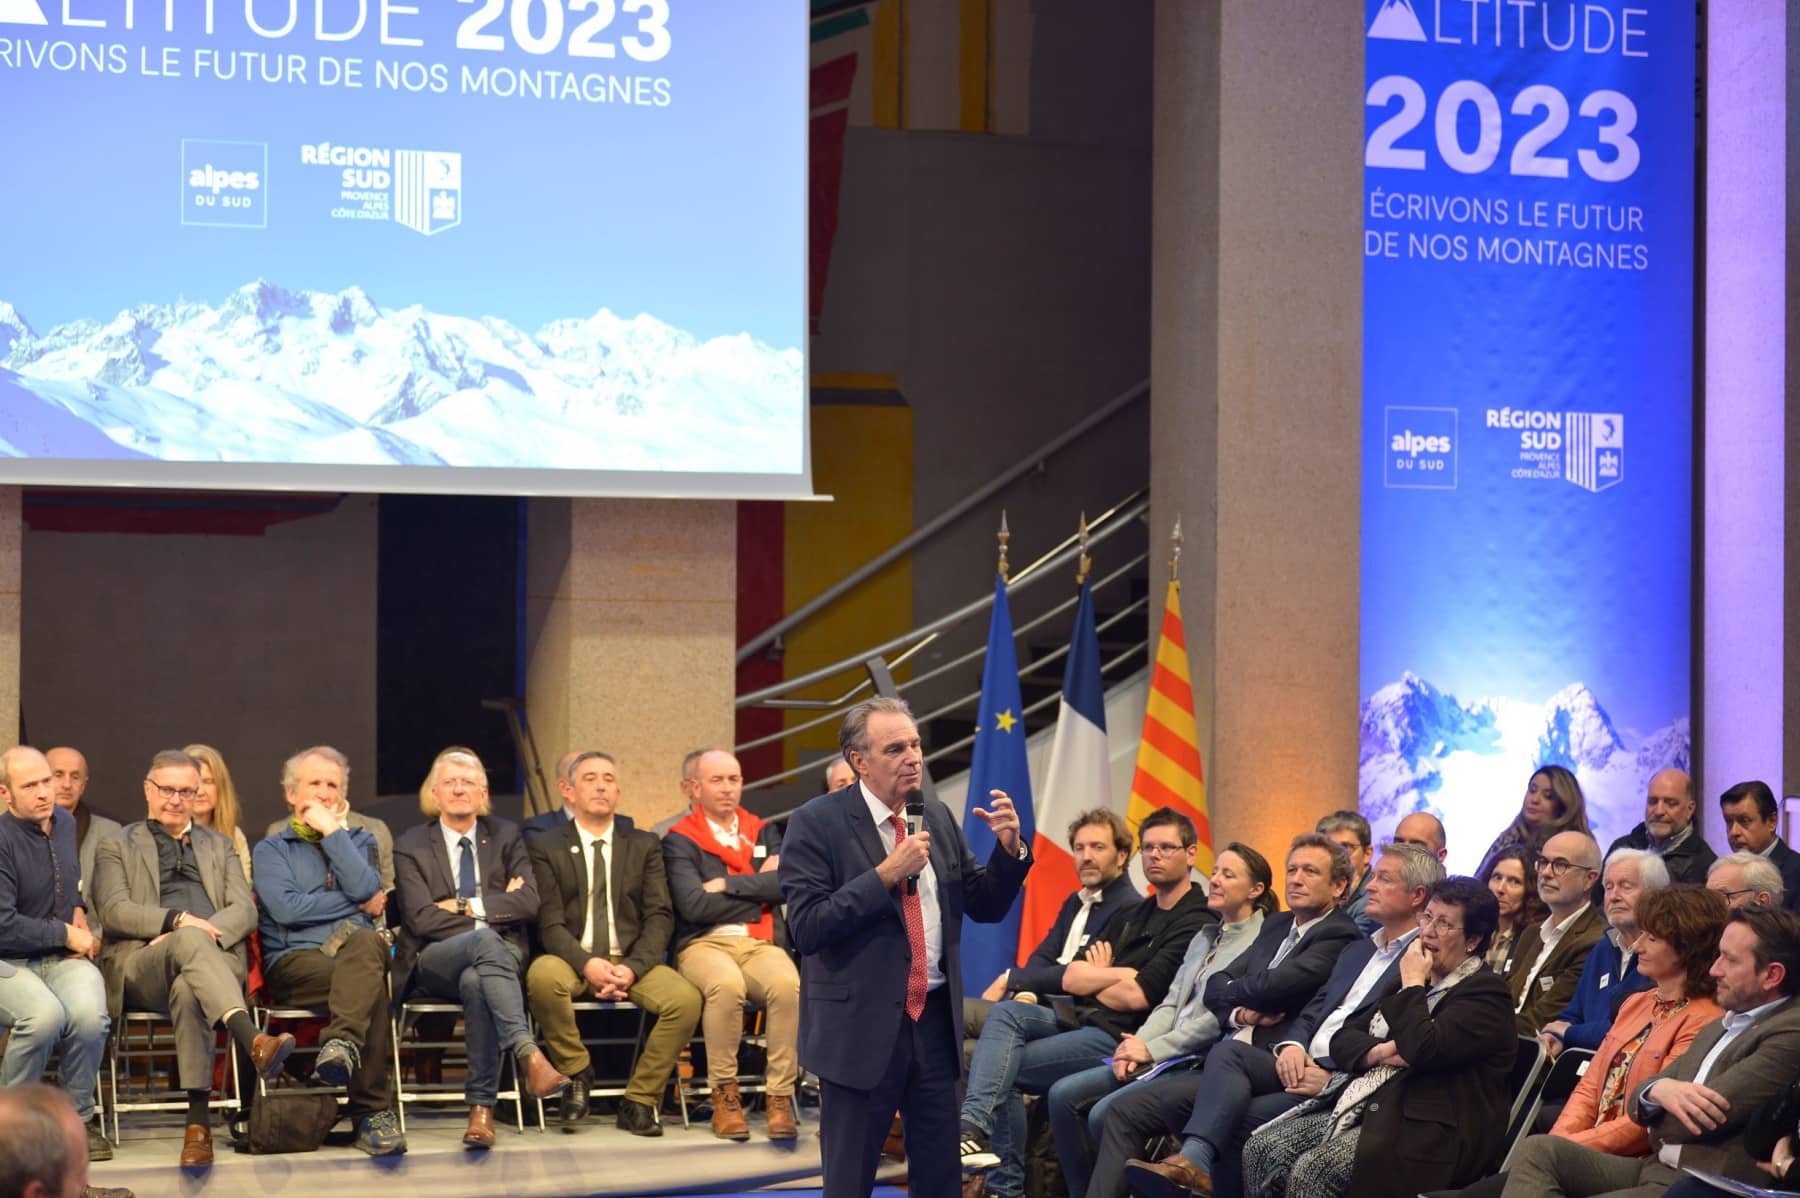 Altitude 2023, Avec Altitude 2023, la Région engage 200 millions pour les Alpes du Sud, Made in Marseille